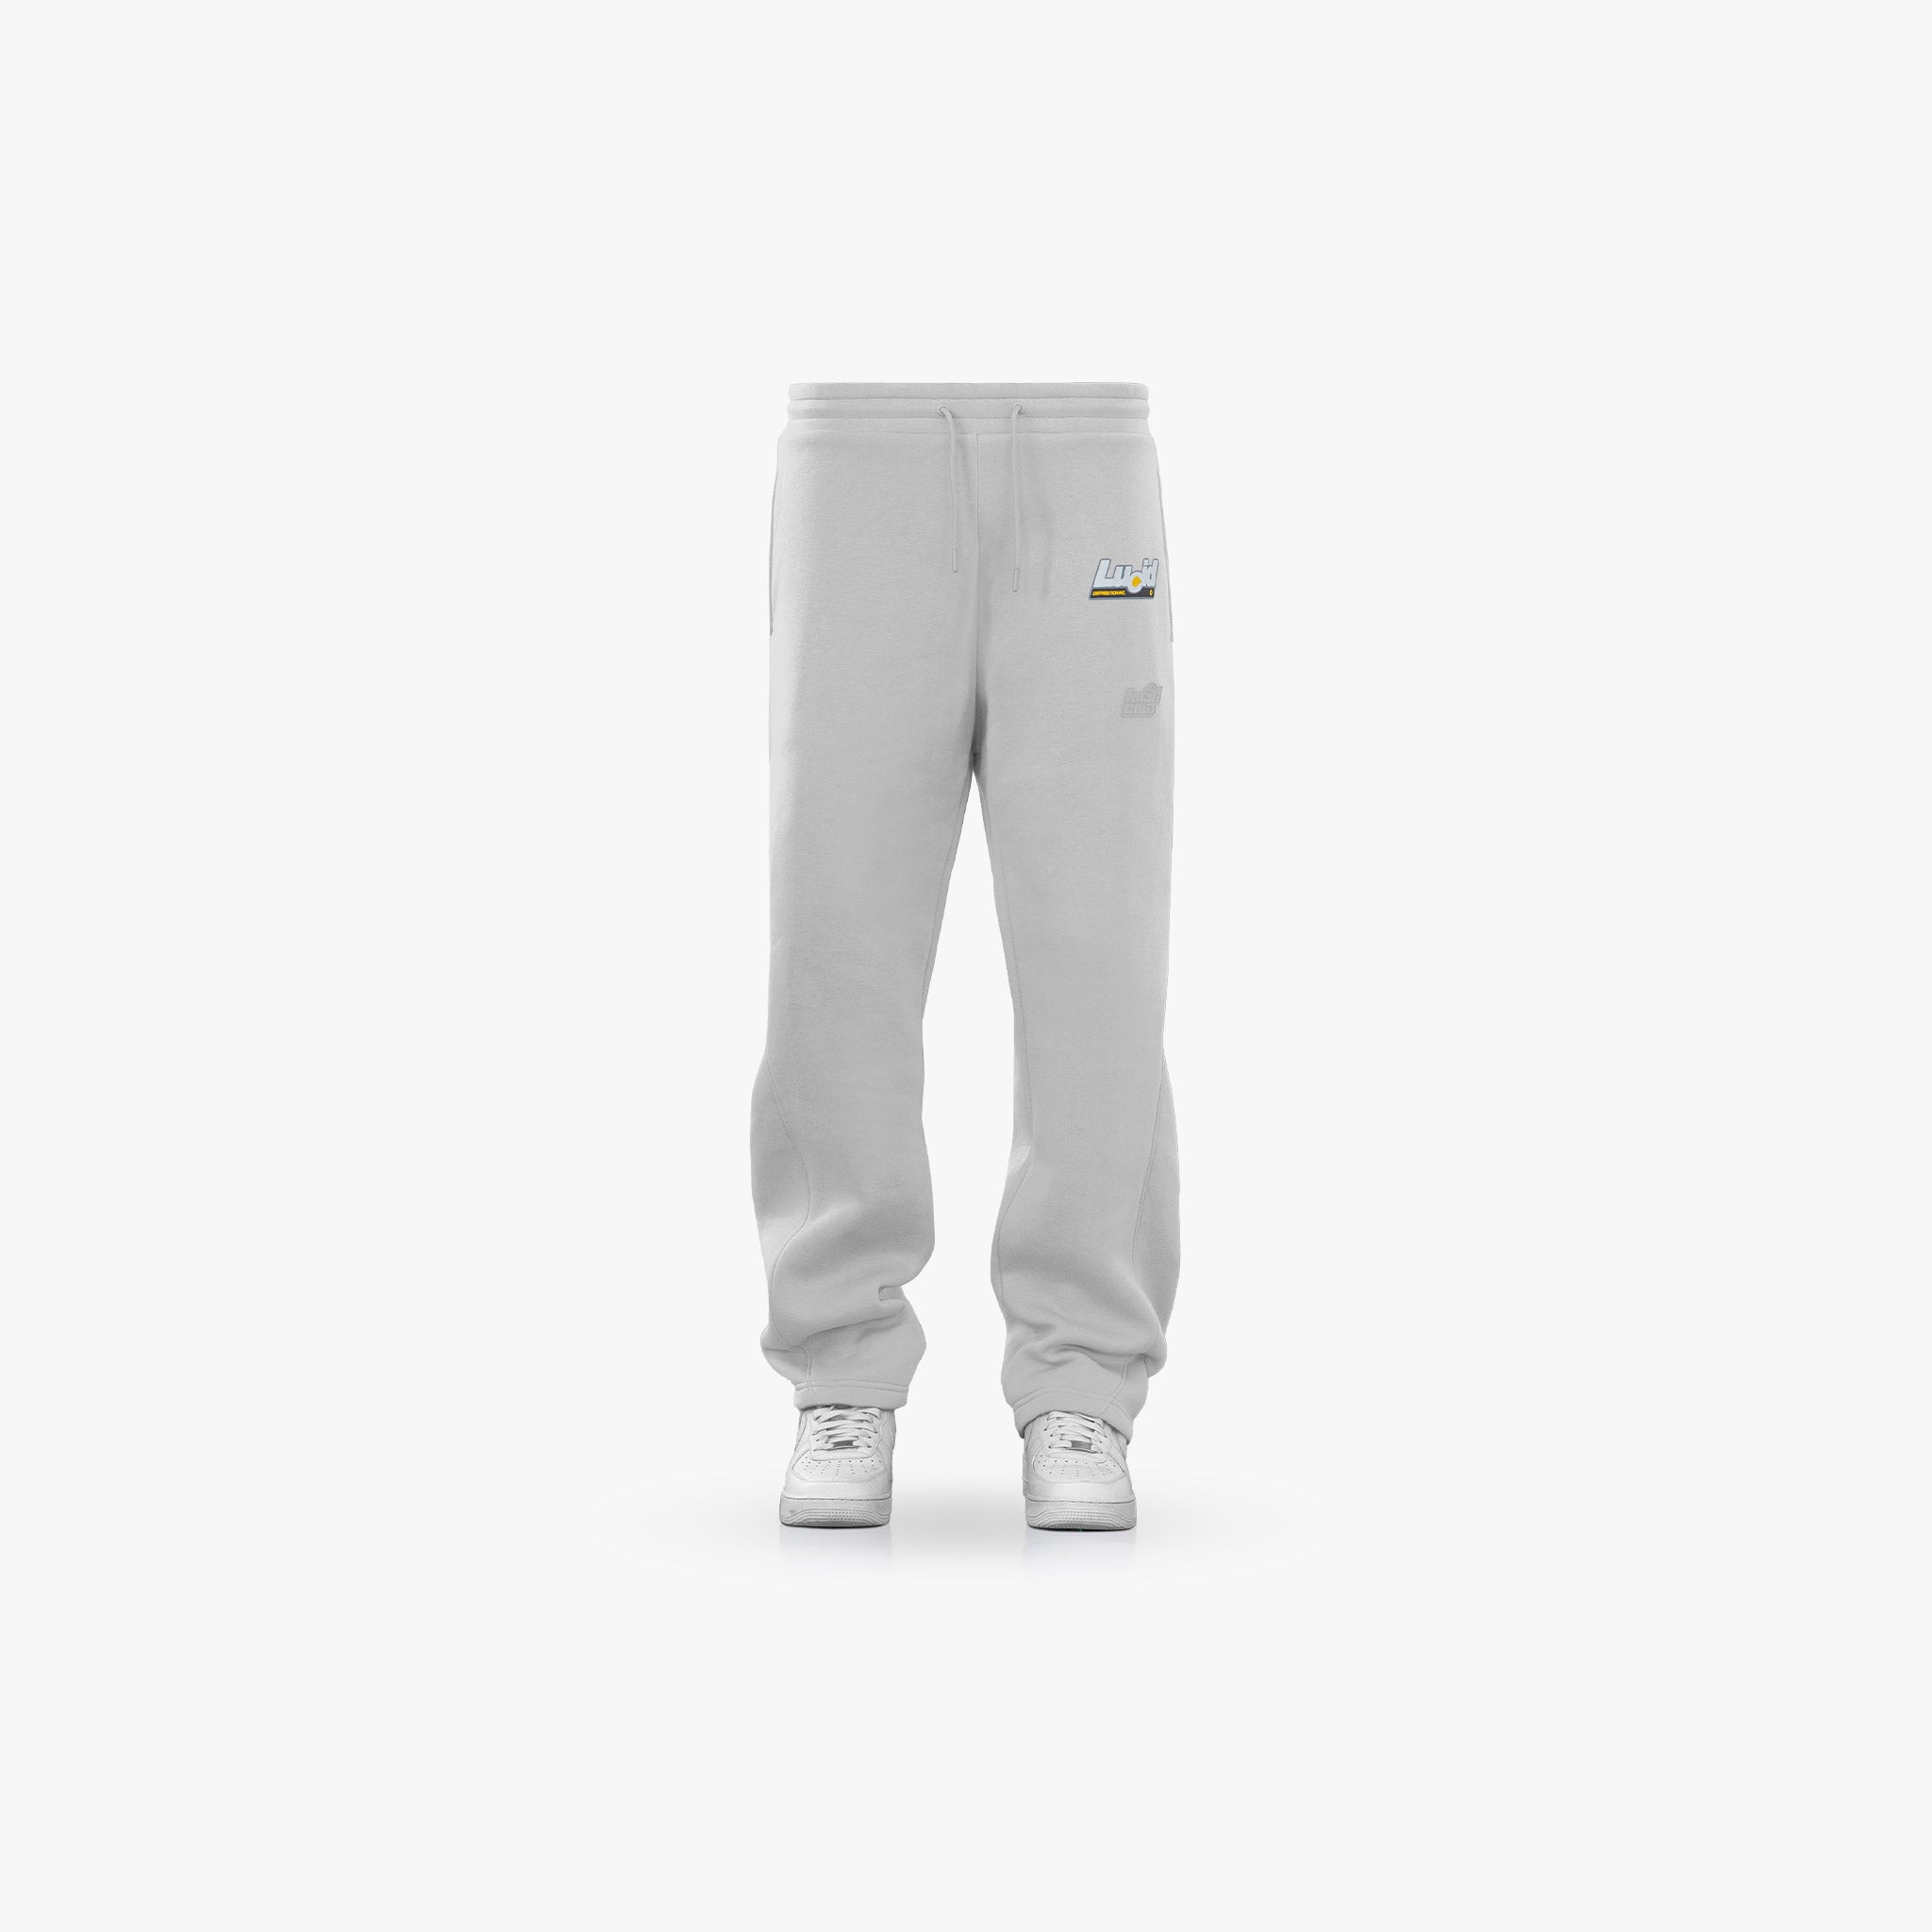 LOA Sweatpants "Grey" - Lucid Club